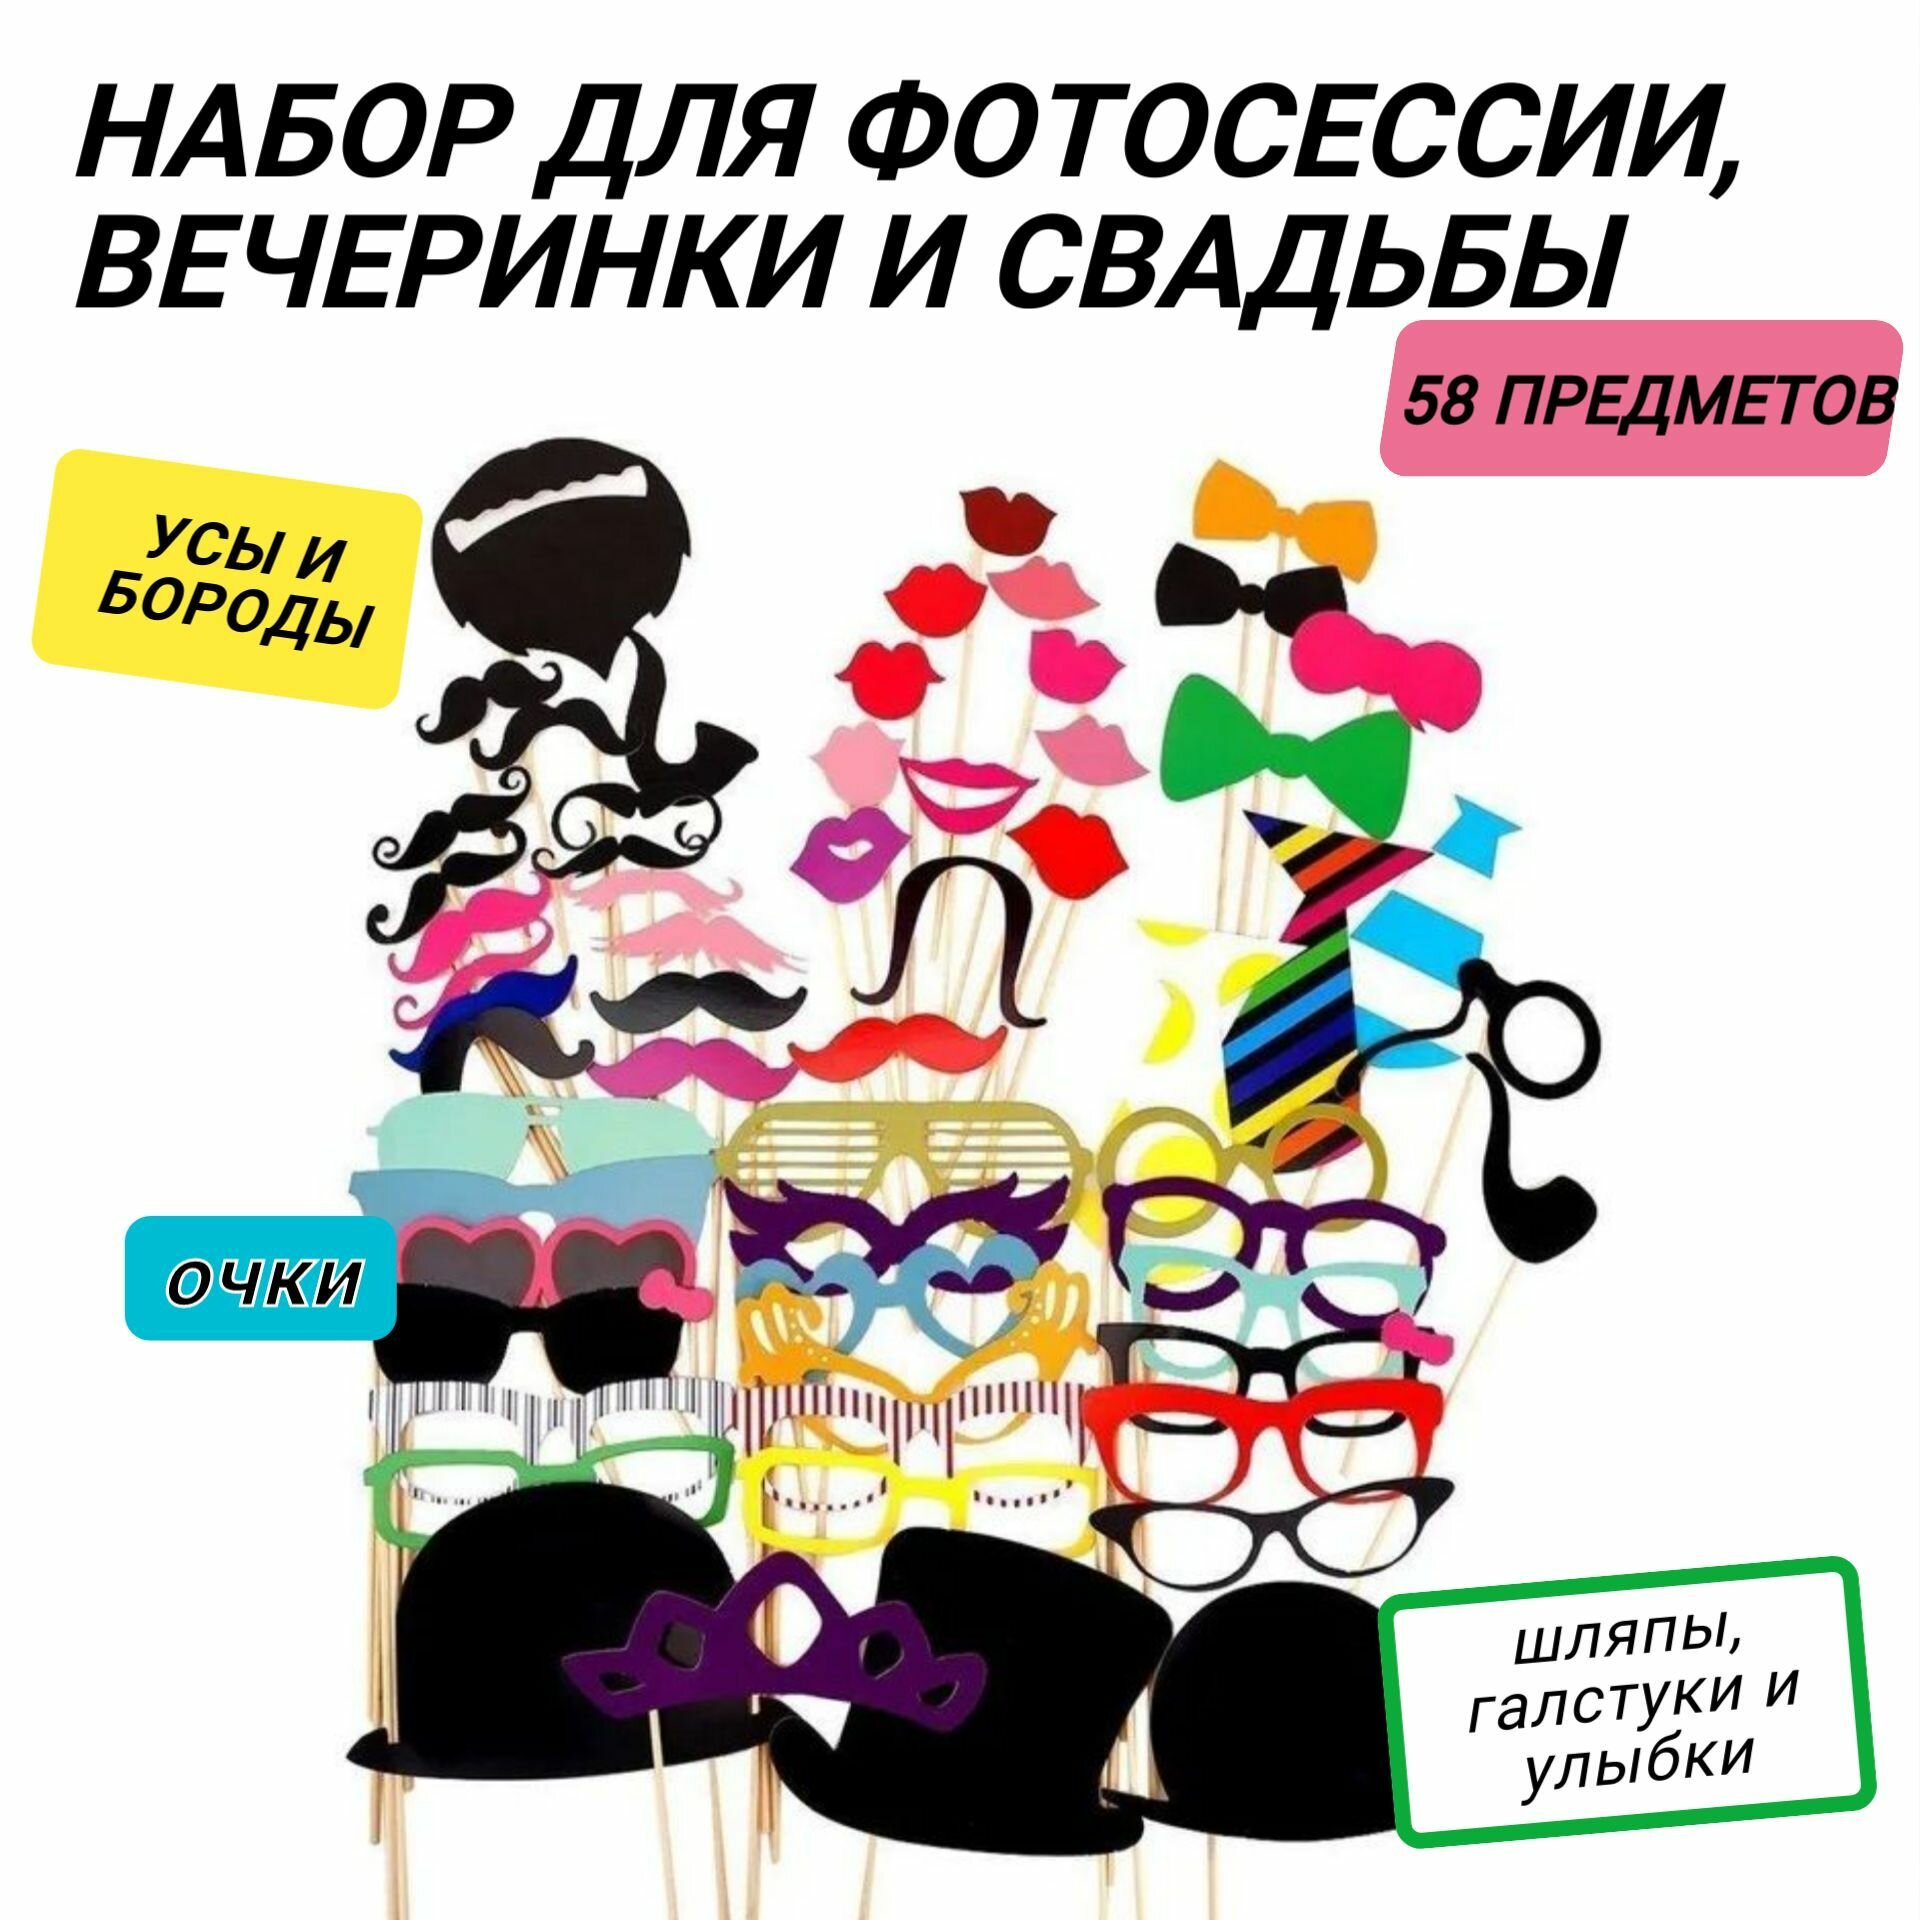 Фотобутафория 30 предметов (усы очки бодики пустышки и др) Карнавальный набор для фотосессии вечеринки гендер пати